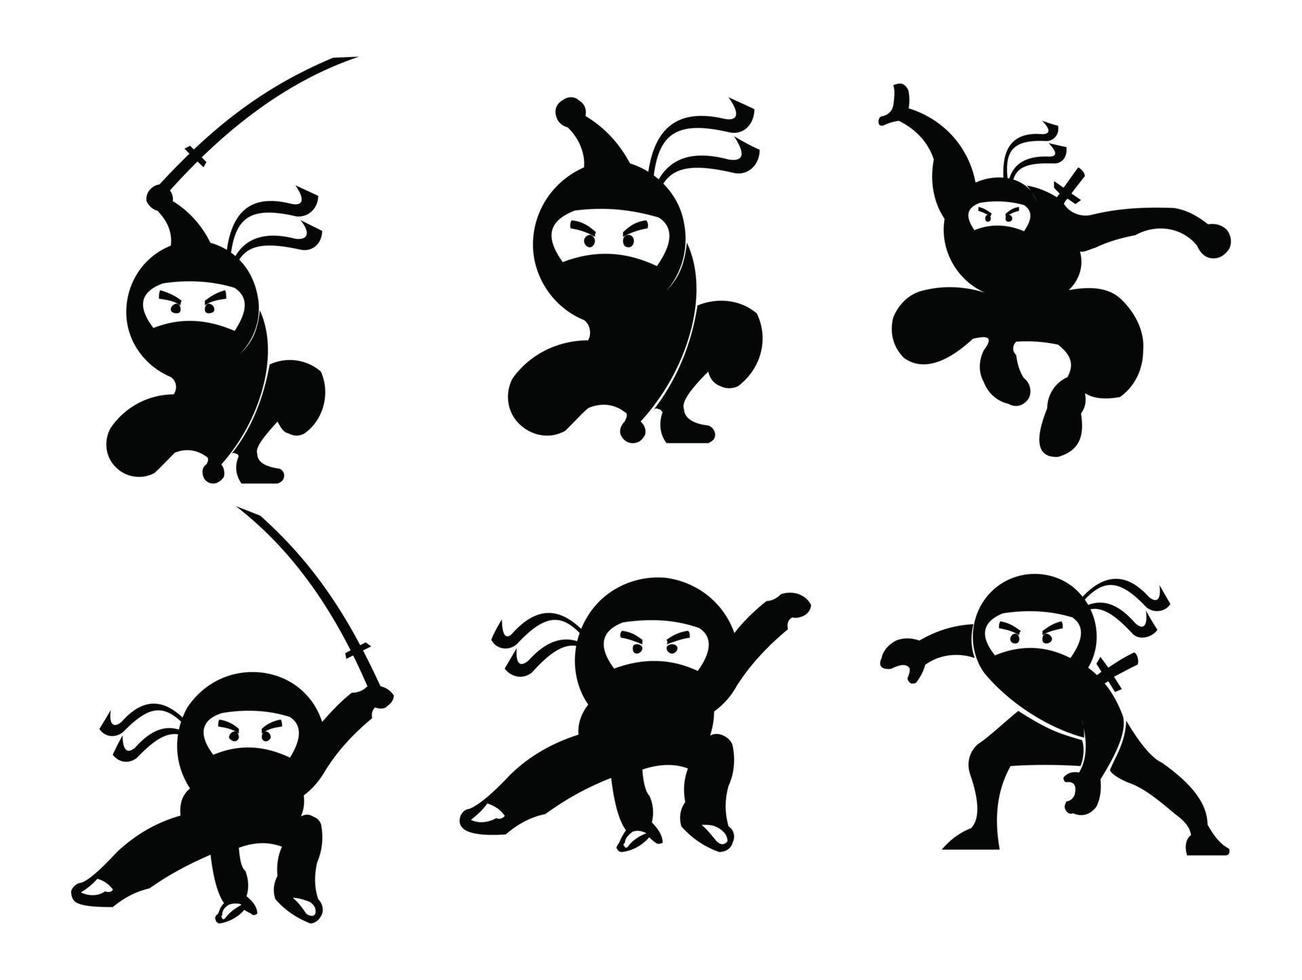 Ninja Samurai Krieger Kämpfer Charakter Cartoon Kampfkunst Waffe Shuriken vektor